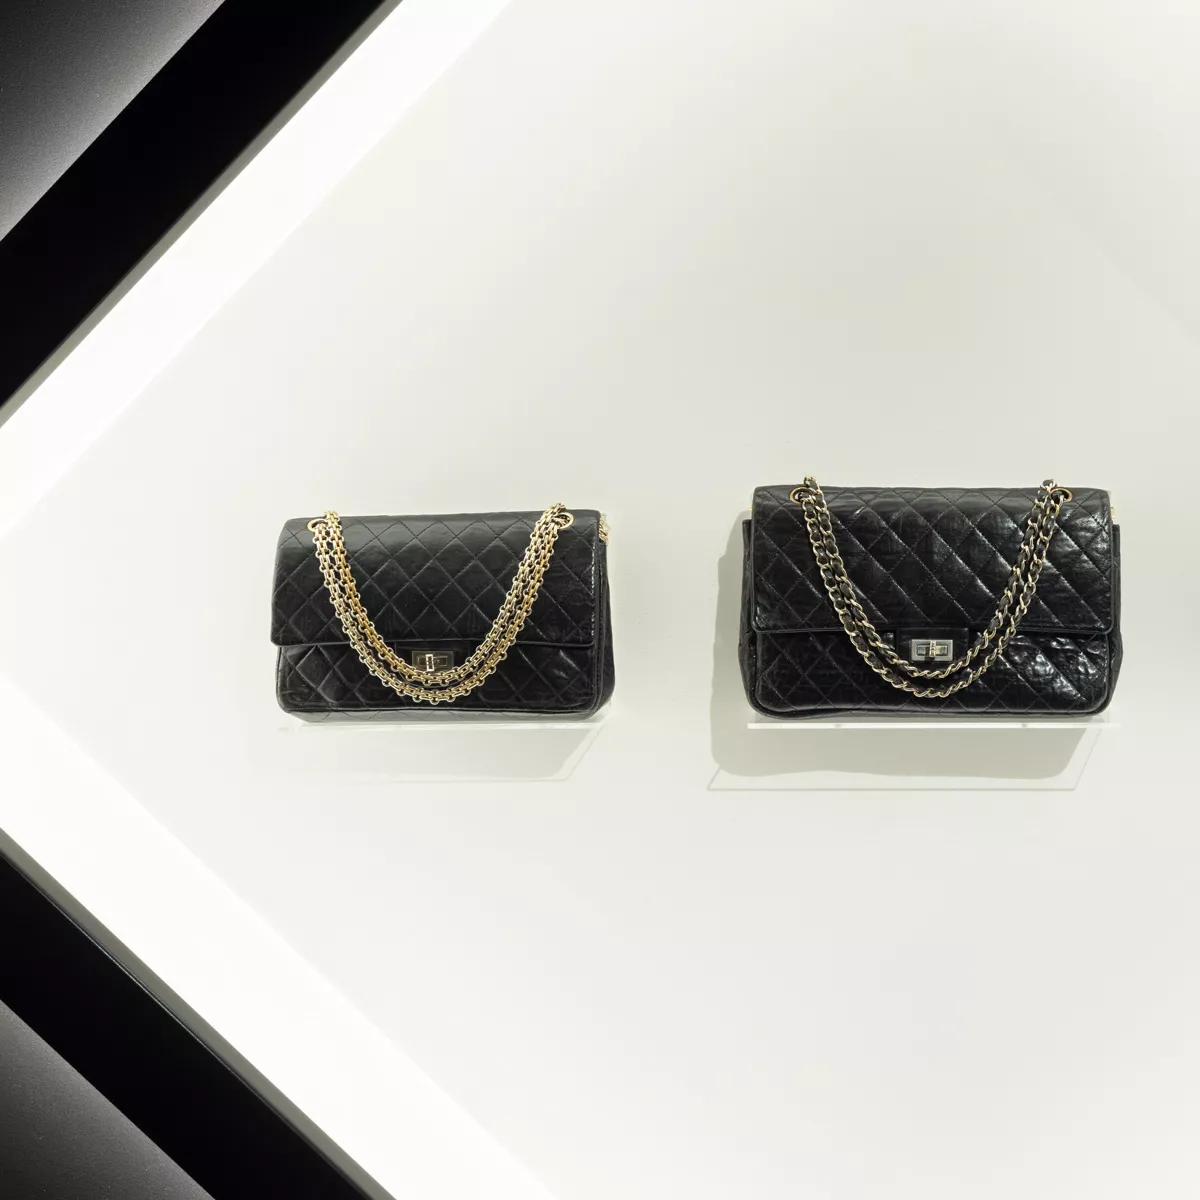 Zwei Chanel-Handtaschen.